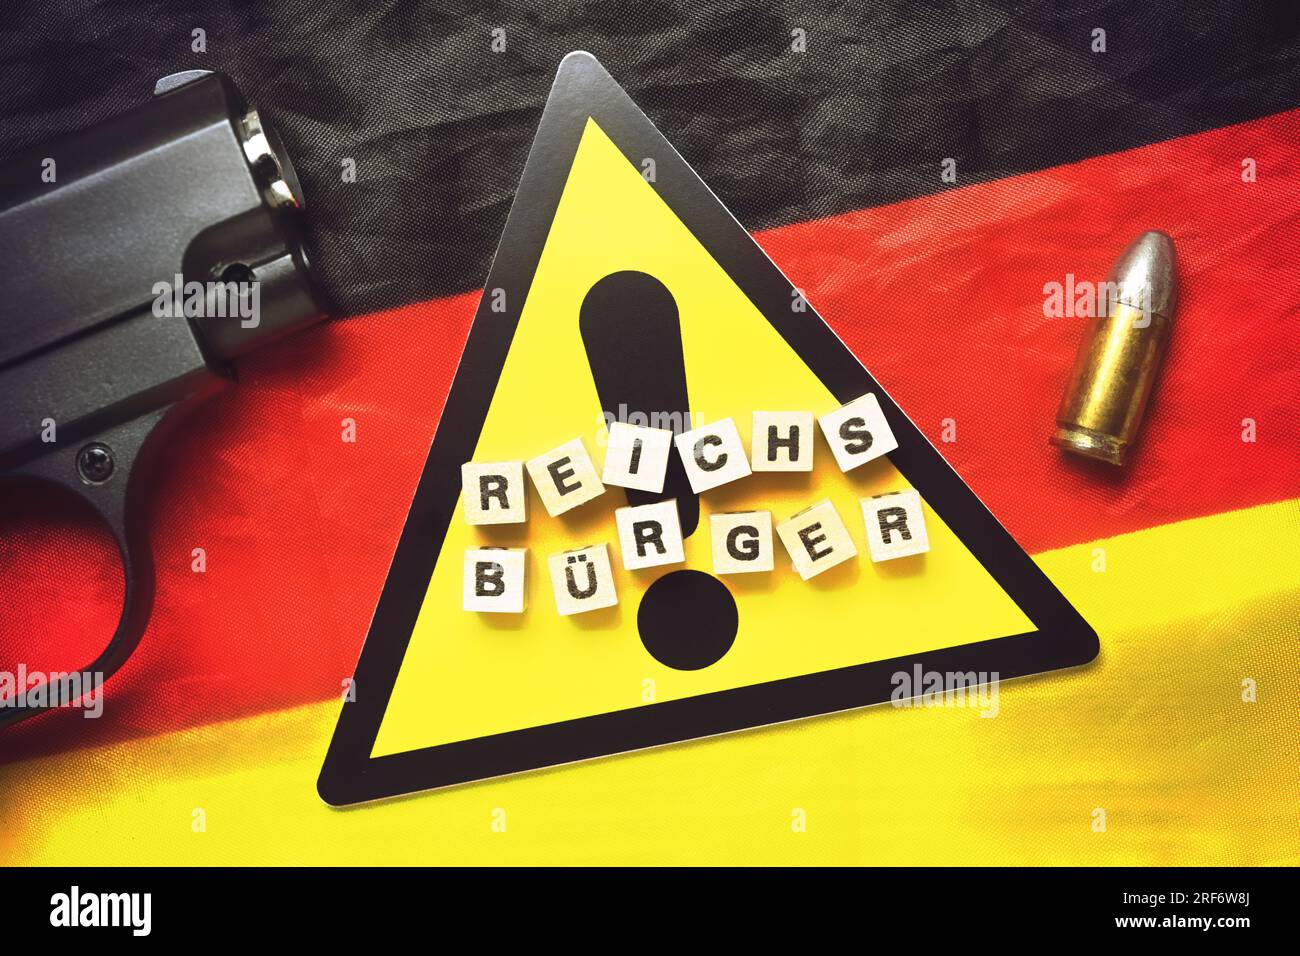 Buchstabenwürfel formen das Wort Reichsbürger auf Gefahrenschild und Deutschlandfahne Stock Photo